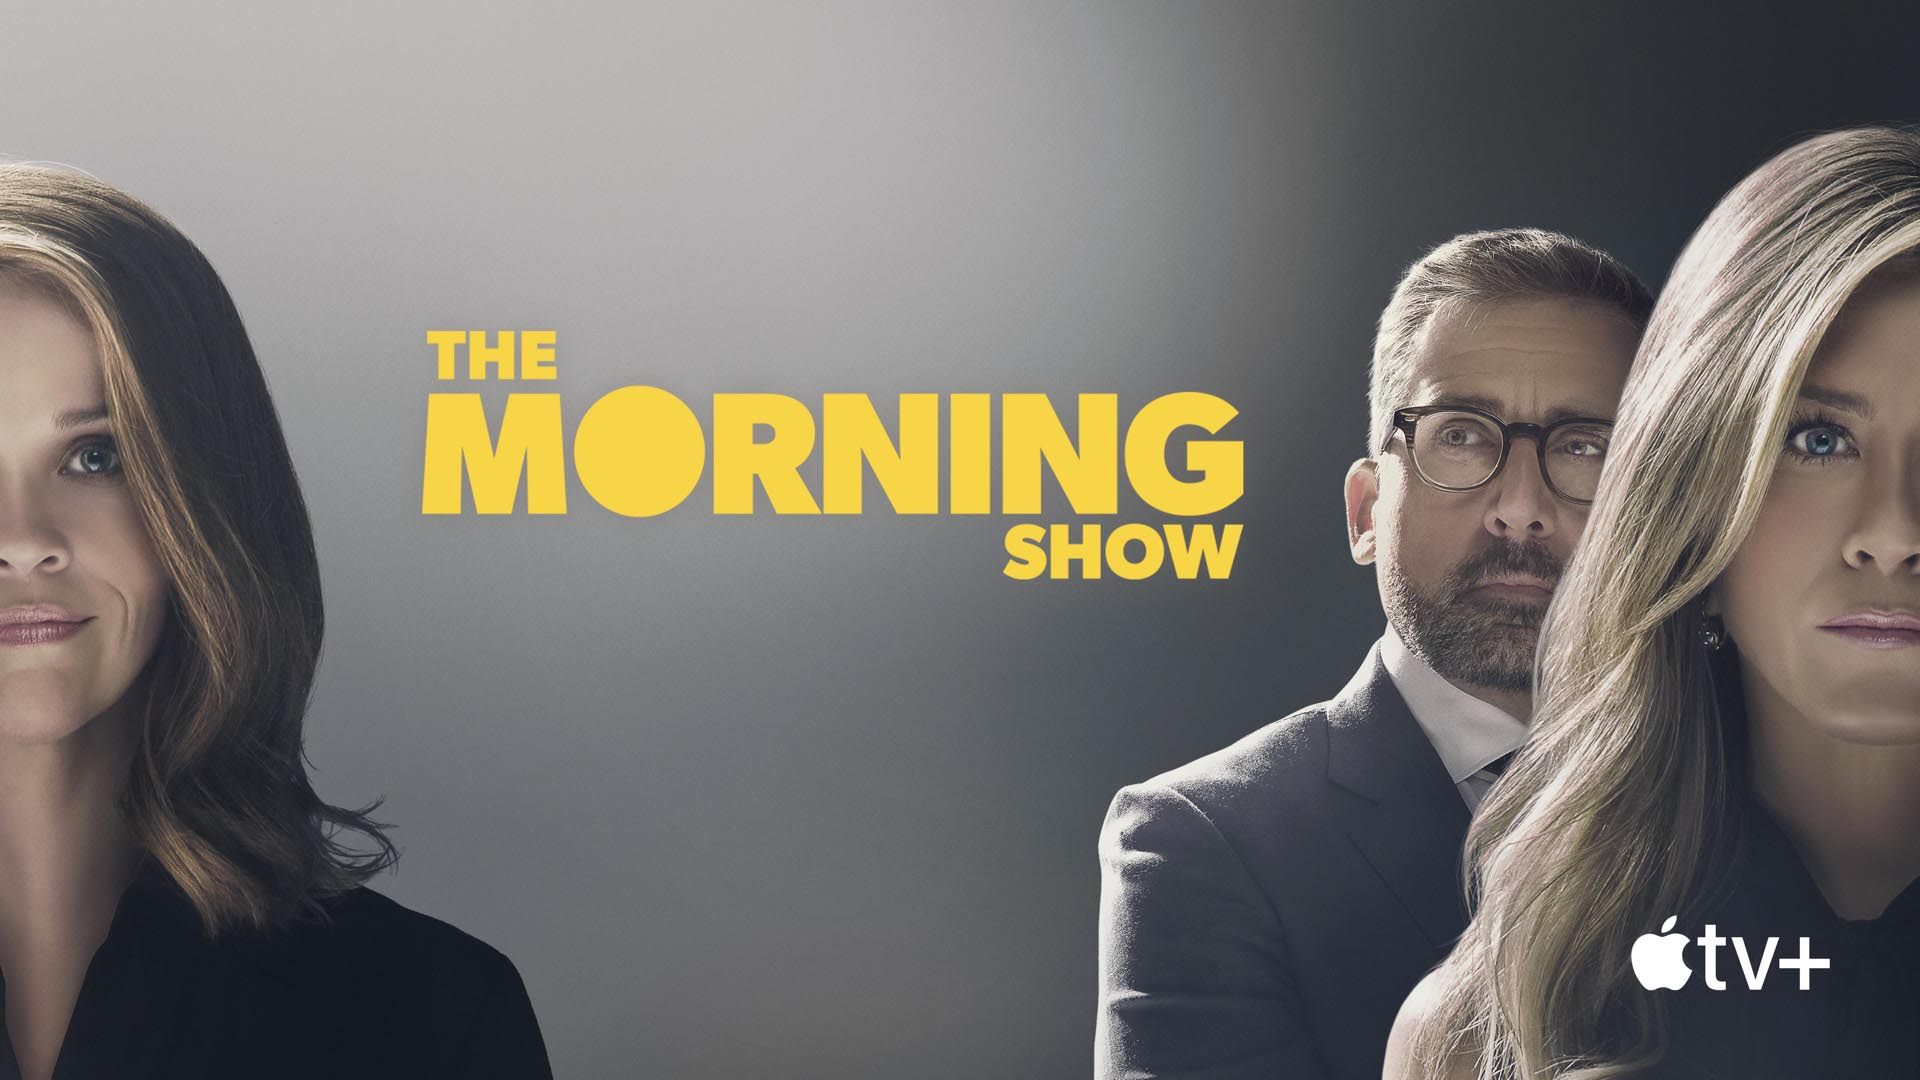 جنیفر انیستون، ریس ویترسپون و استیو کارل در سریال The Morning Show